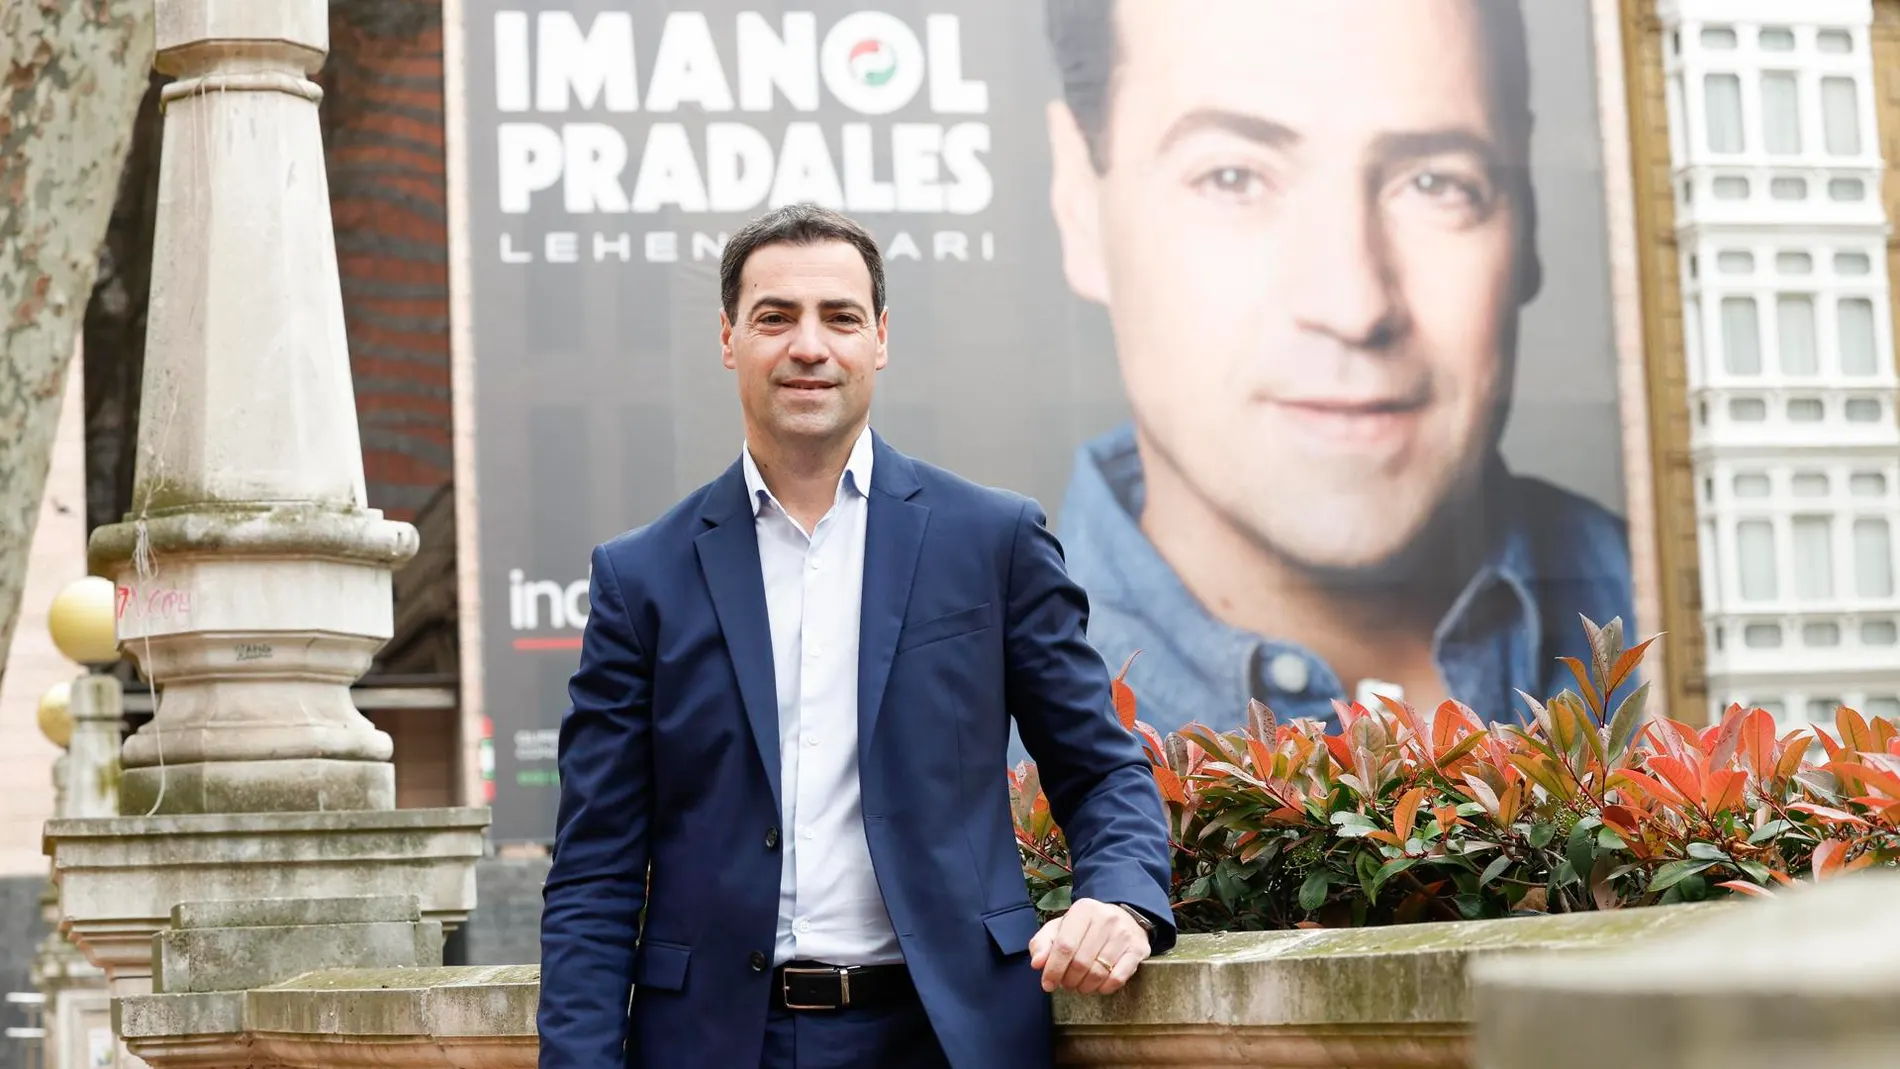 El candidato del PNV a lehendakari, Imanol Pradales